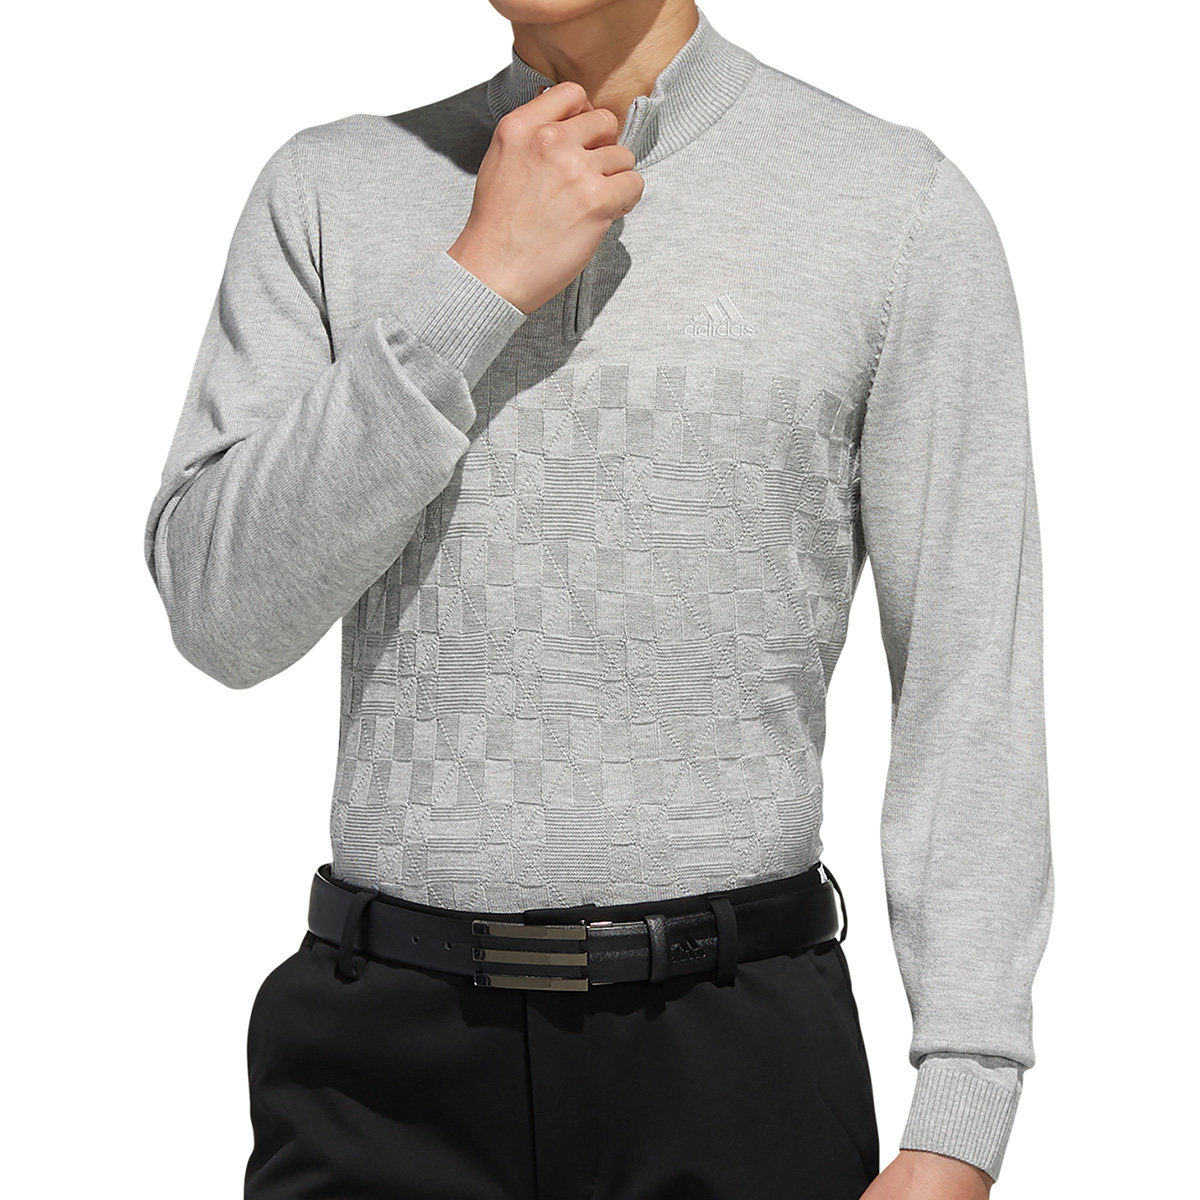  ジャカードパターン 長袖ジップアップセーター 